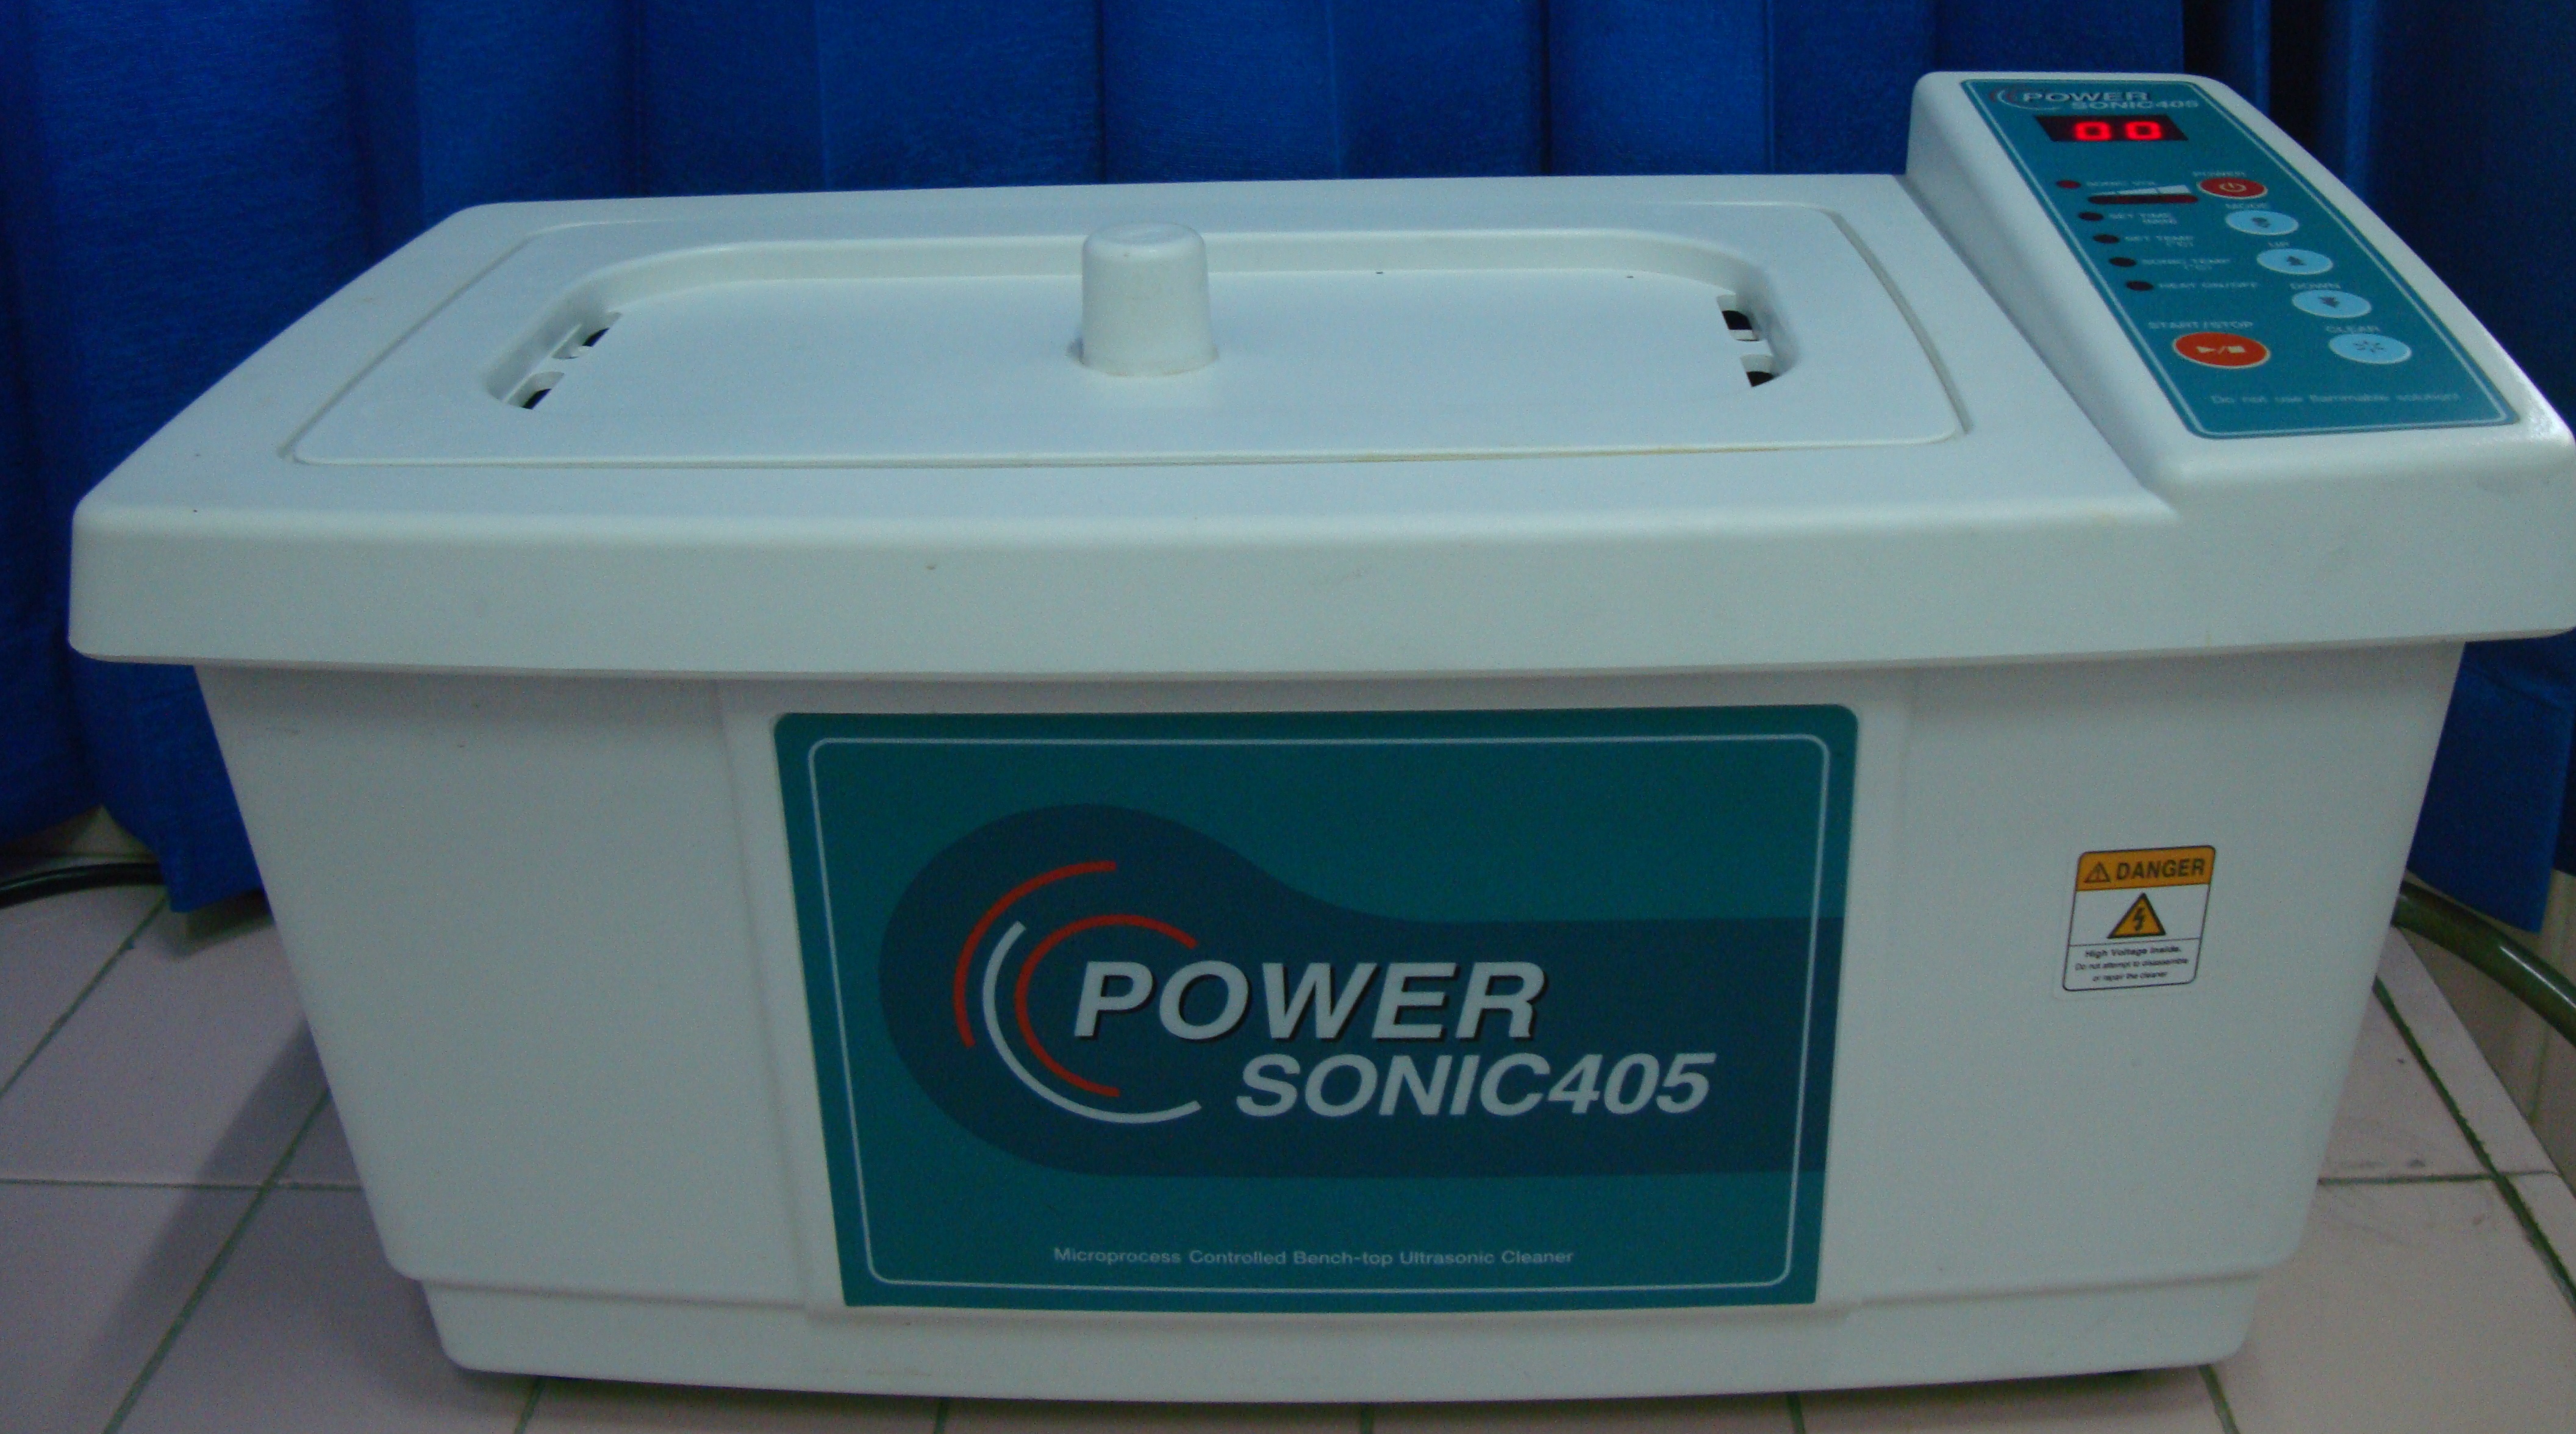 Ultrasonic Cleaner Merk Power Sonic405